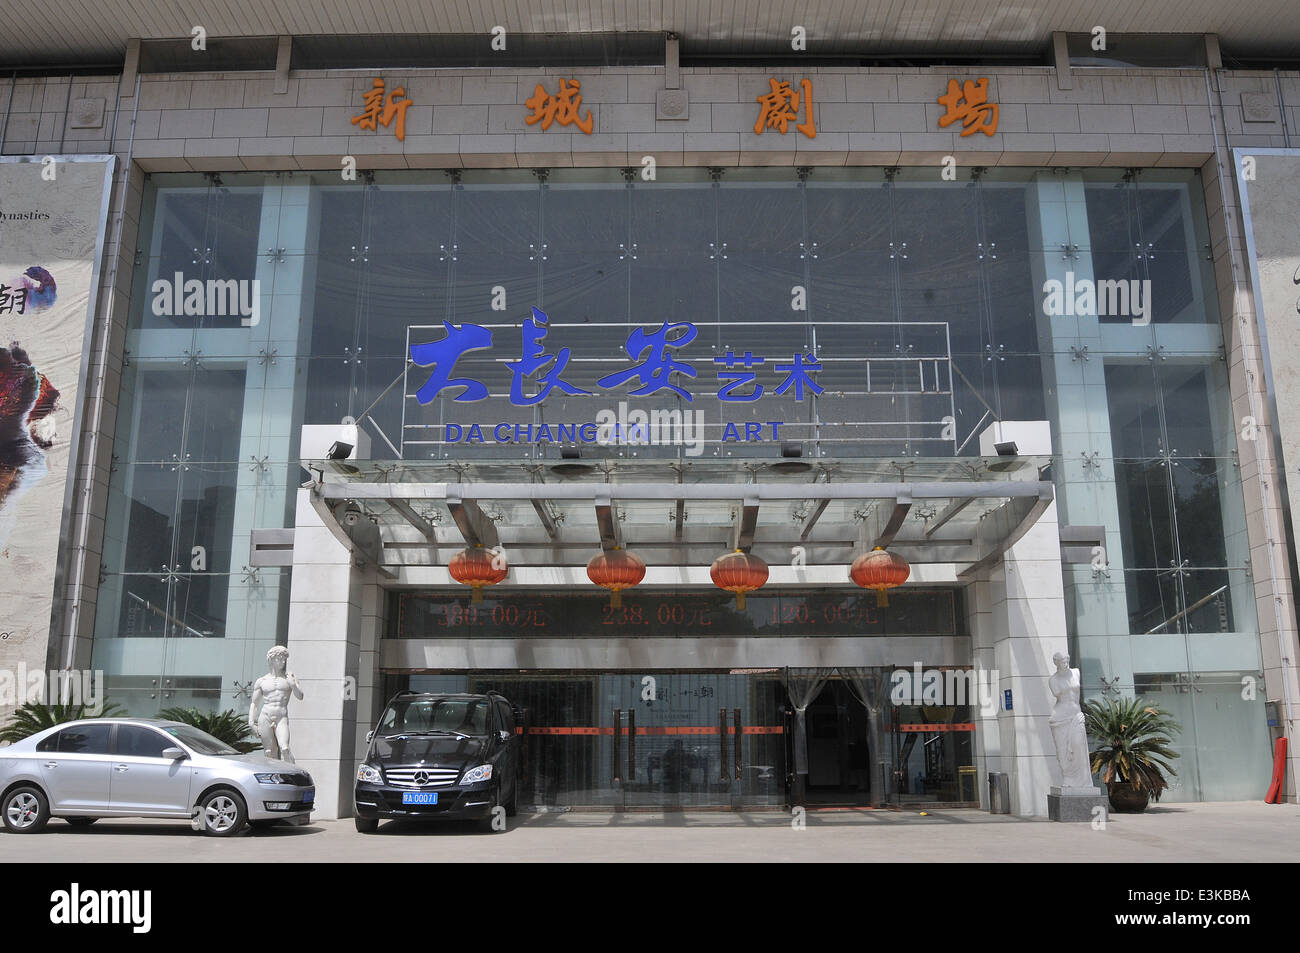 Da Chang An Art Theater Xi'an China Stock Photo